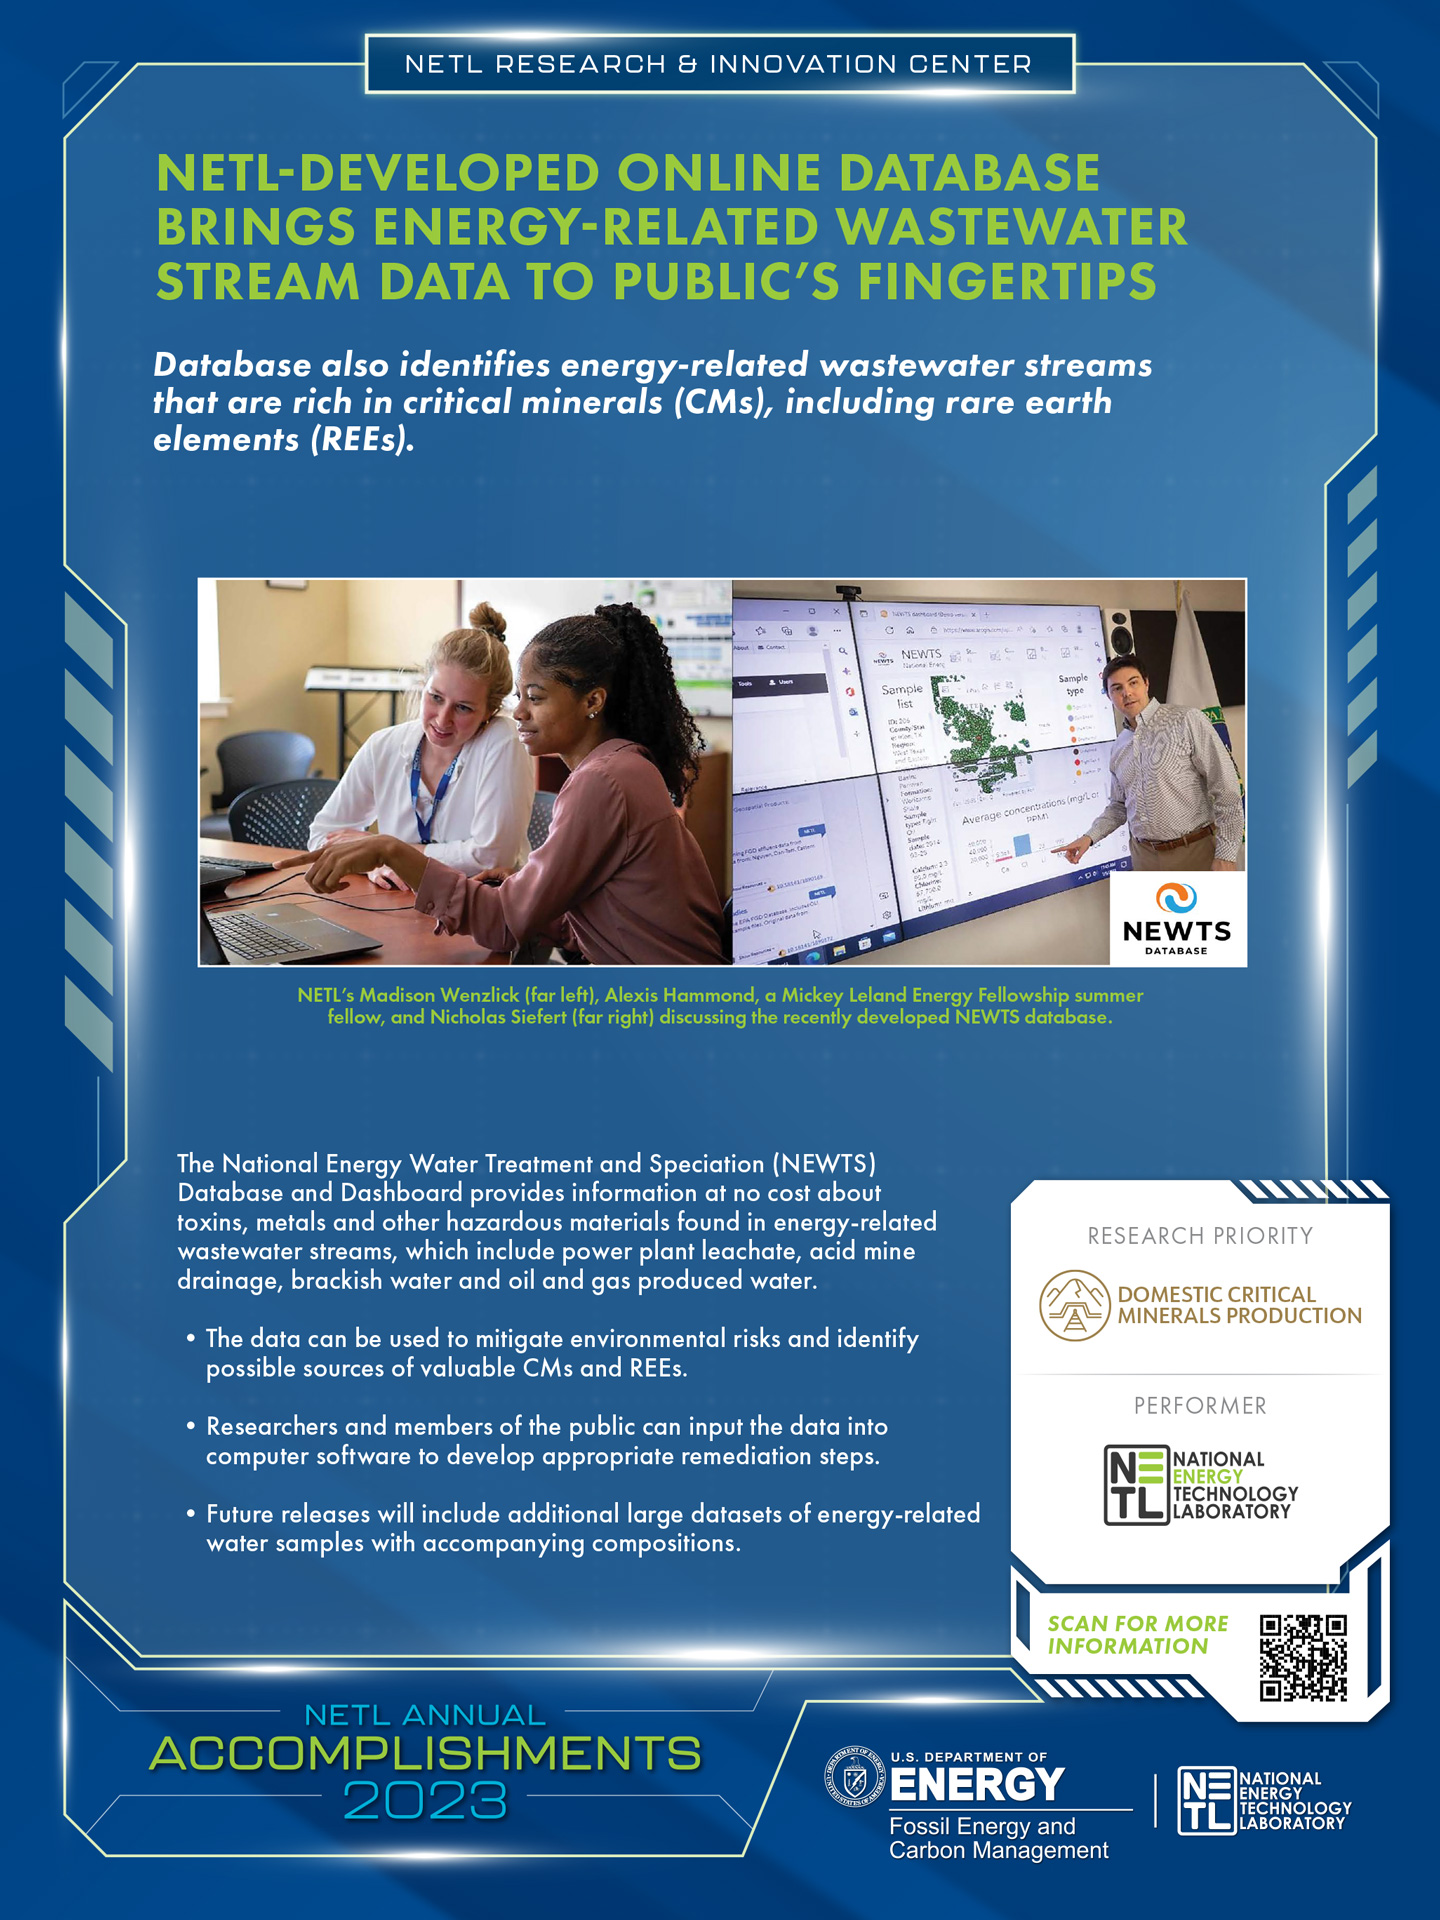 NETL-Developed Online Database Brings Energy-Related Wastewater Stream Data to Public’s Fingertips